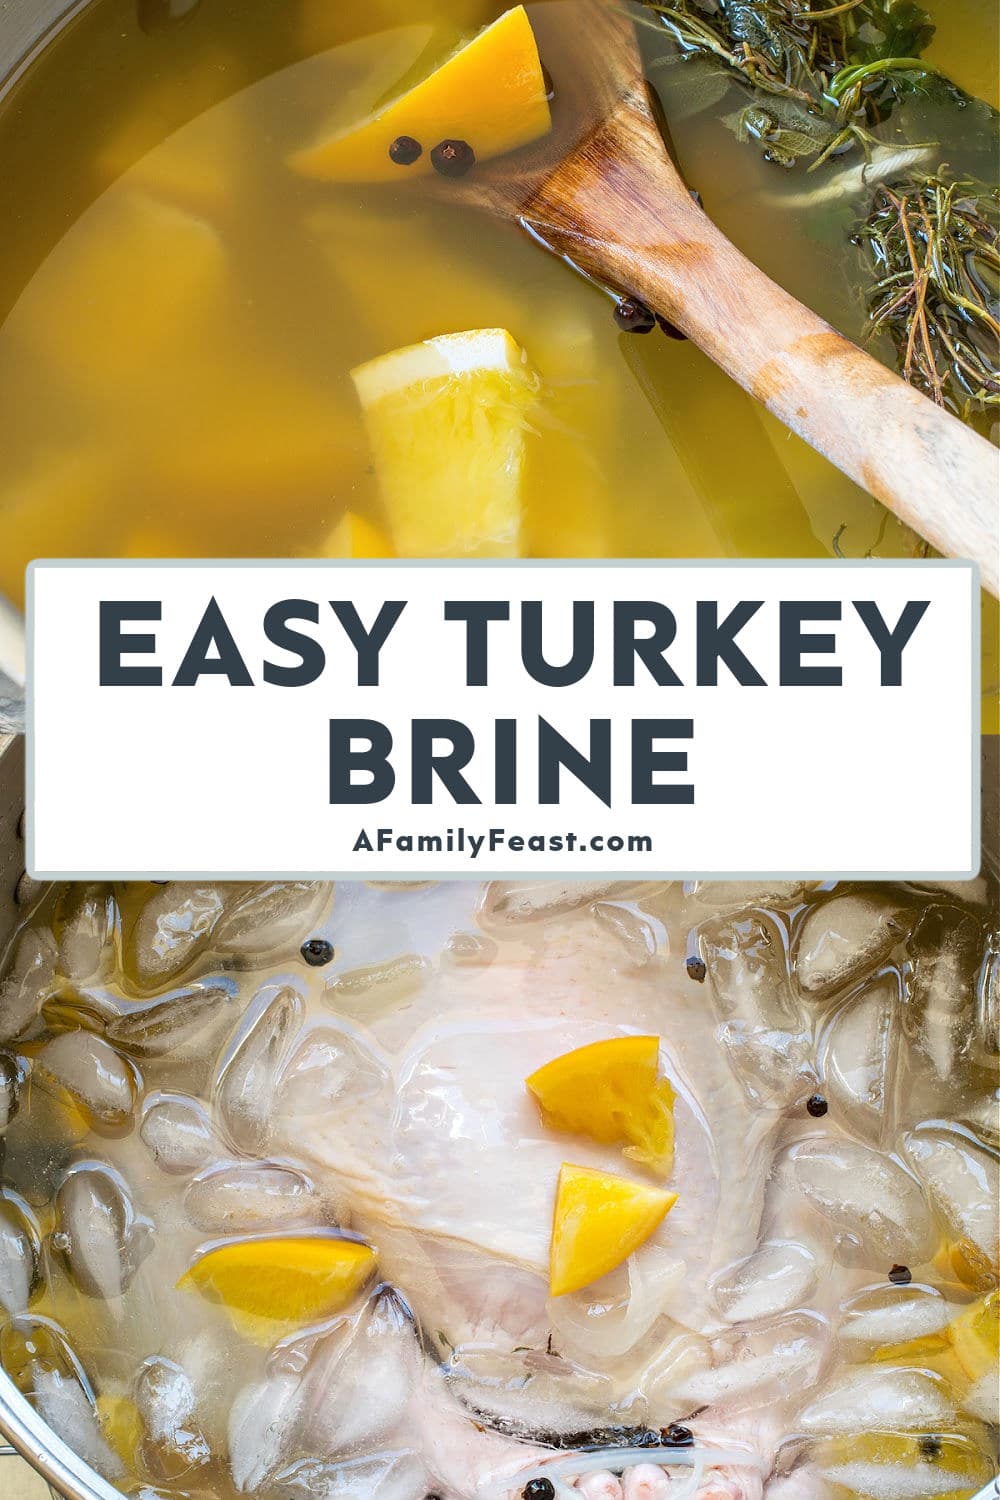 Easy Turkey Brine Recipe - A Family Feast